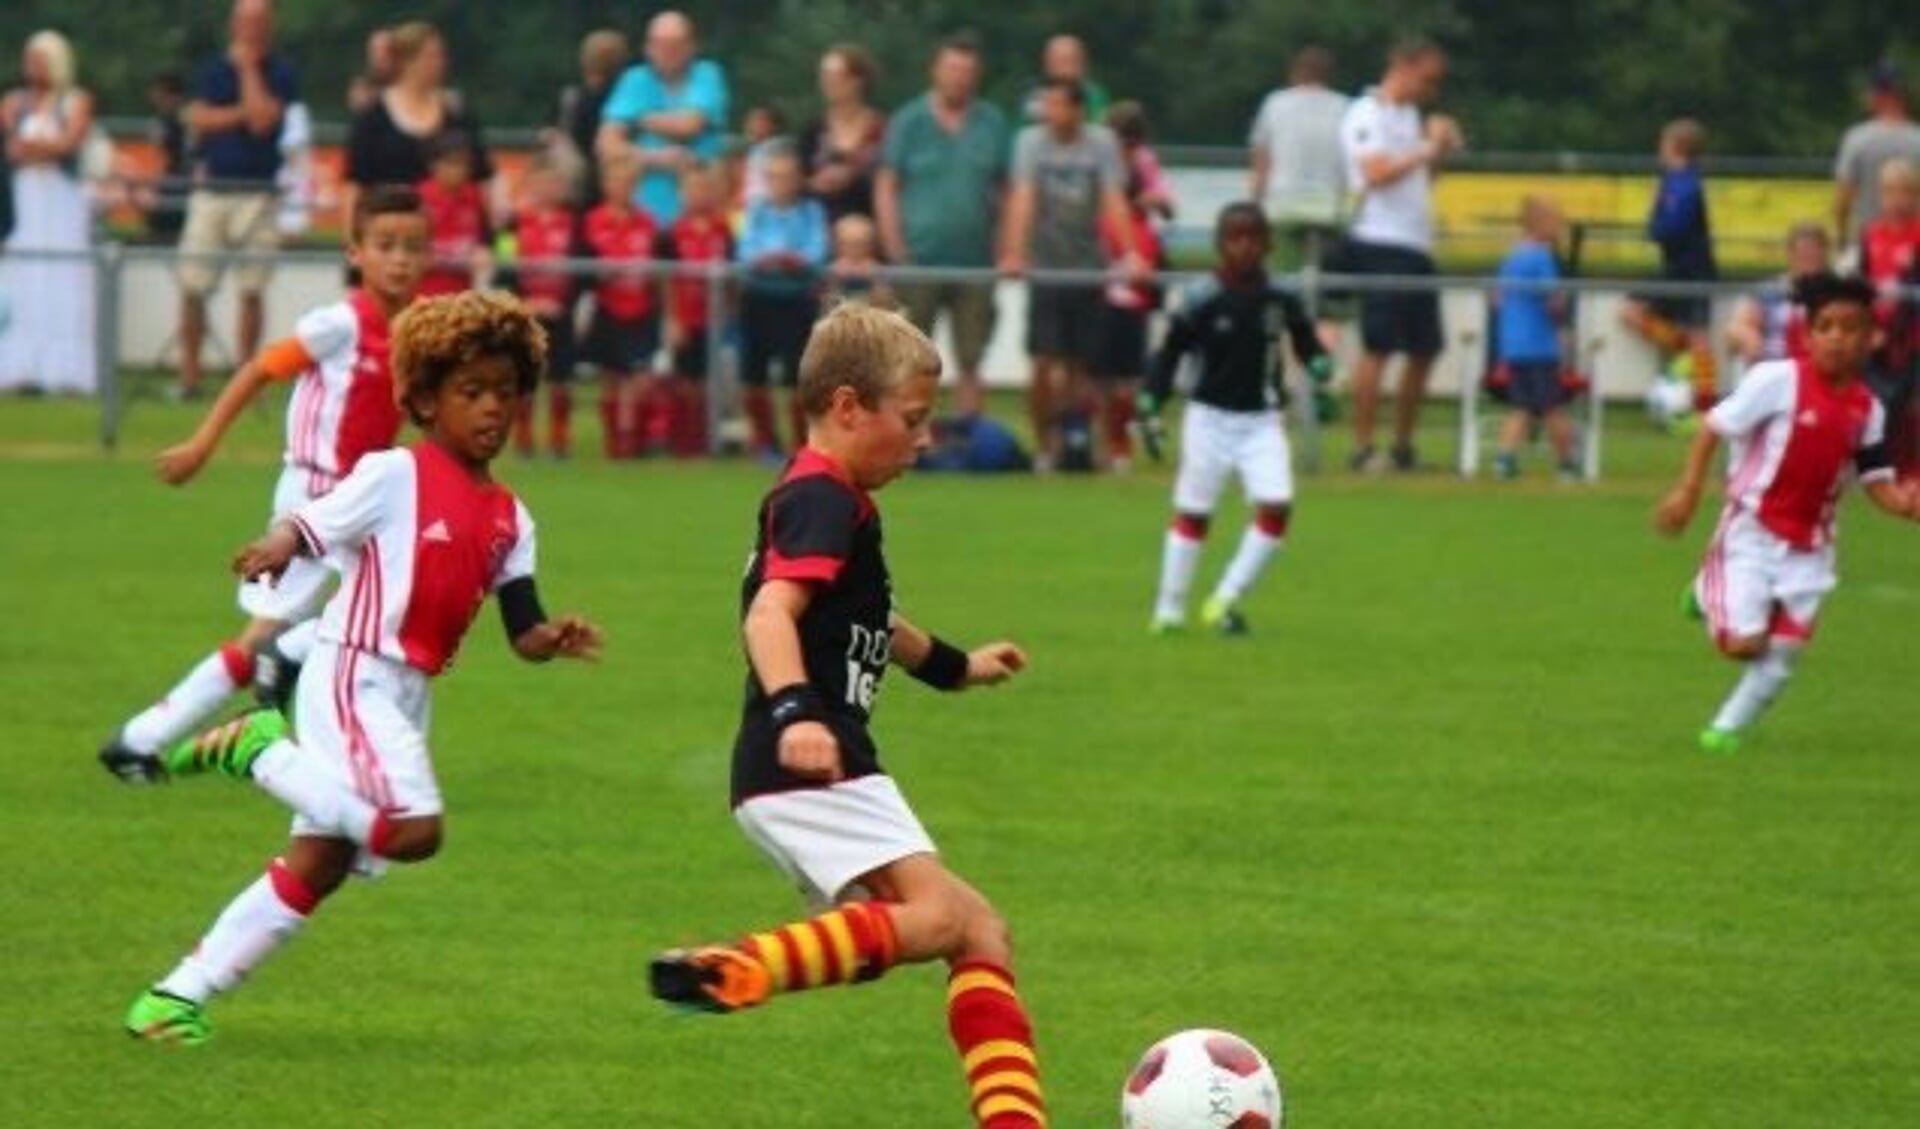 Het Bosma & Schuur Jeugdtoernooi: twee prachtige voetbaldagen voor de jeugd.